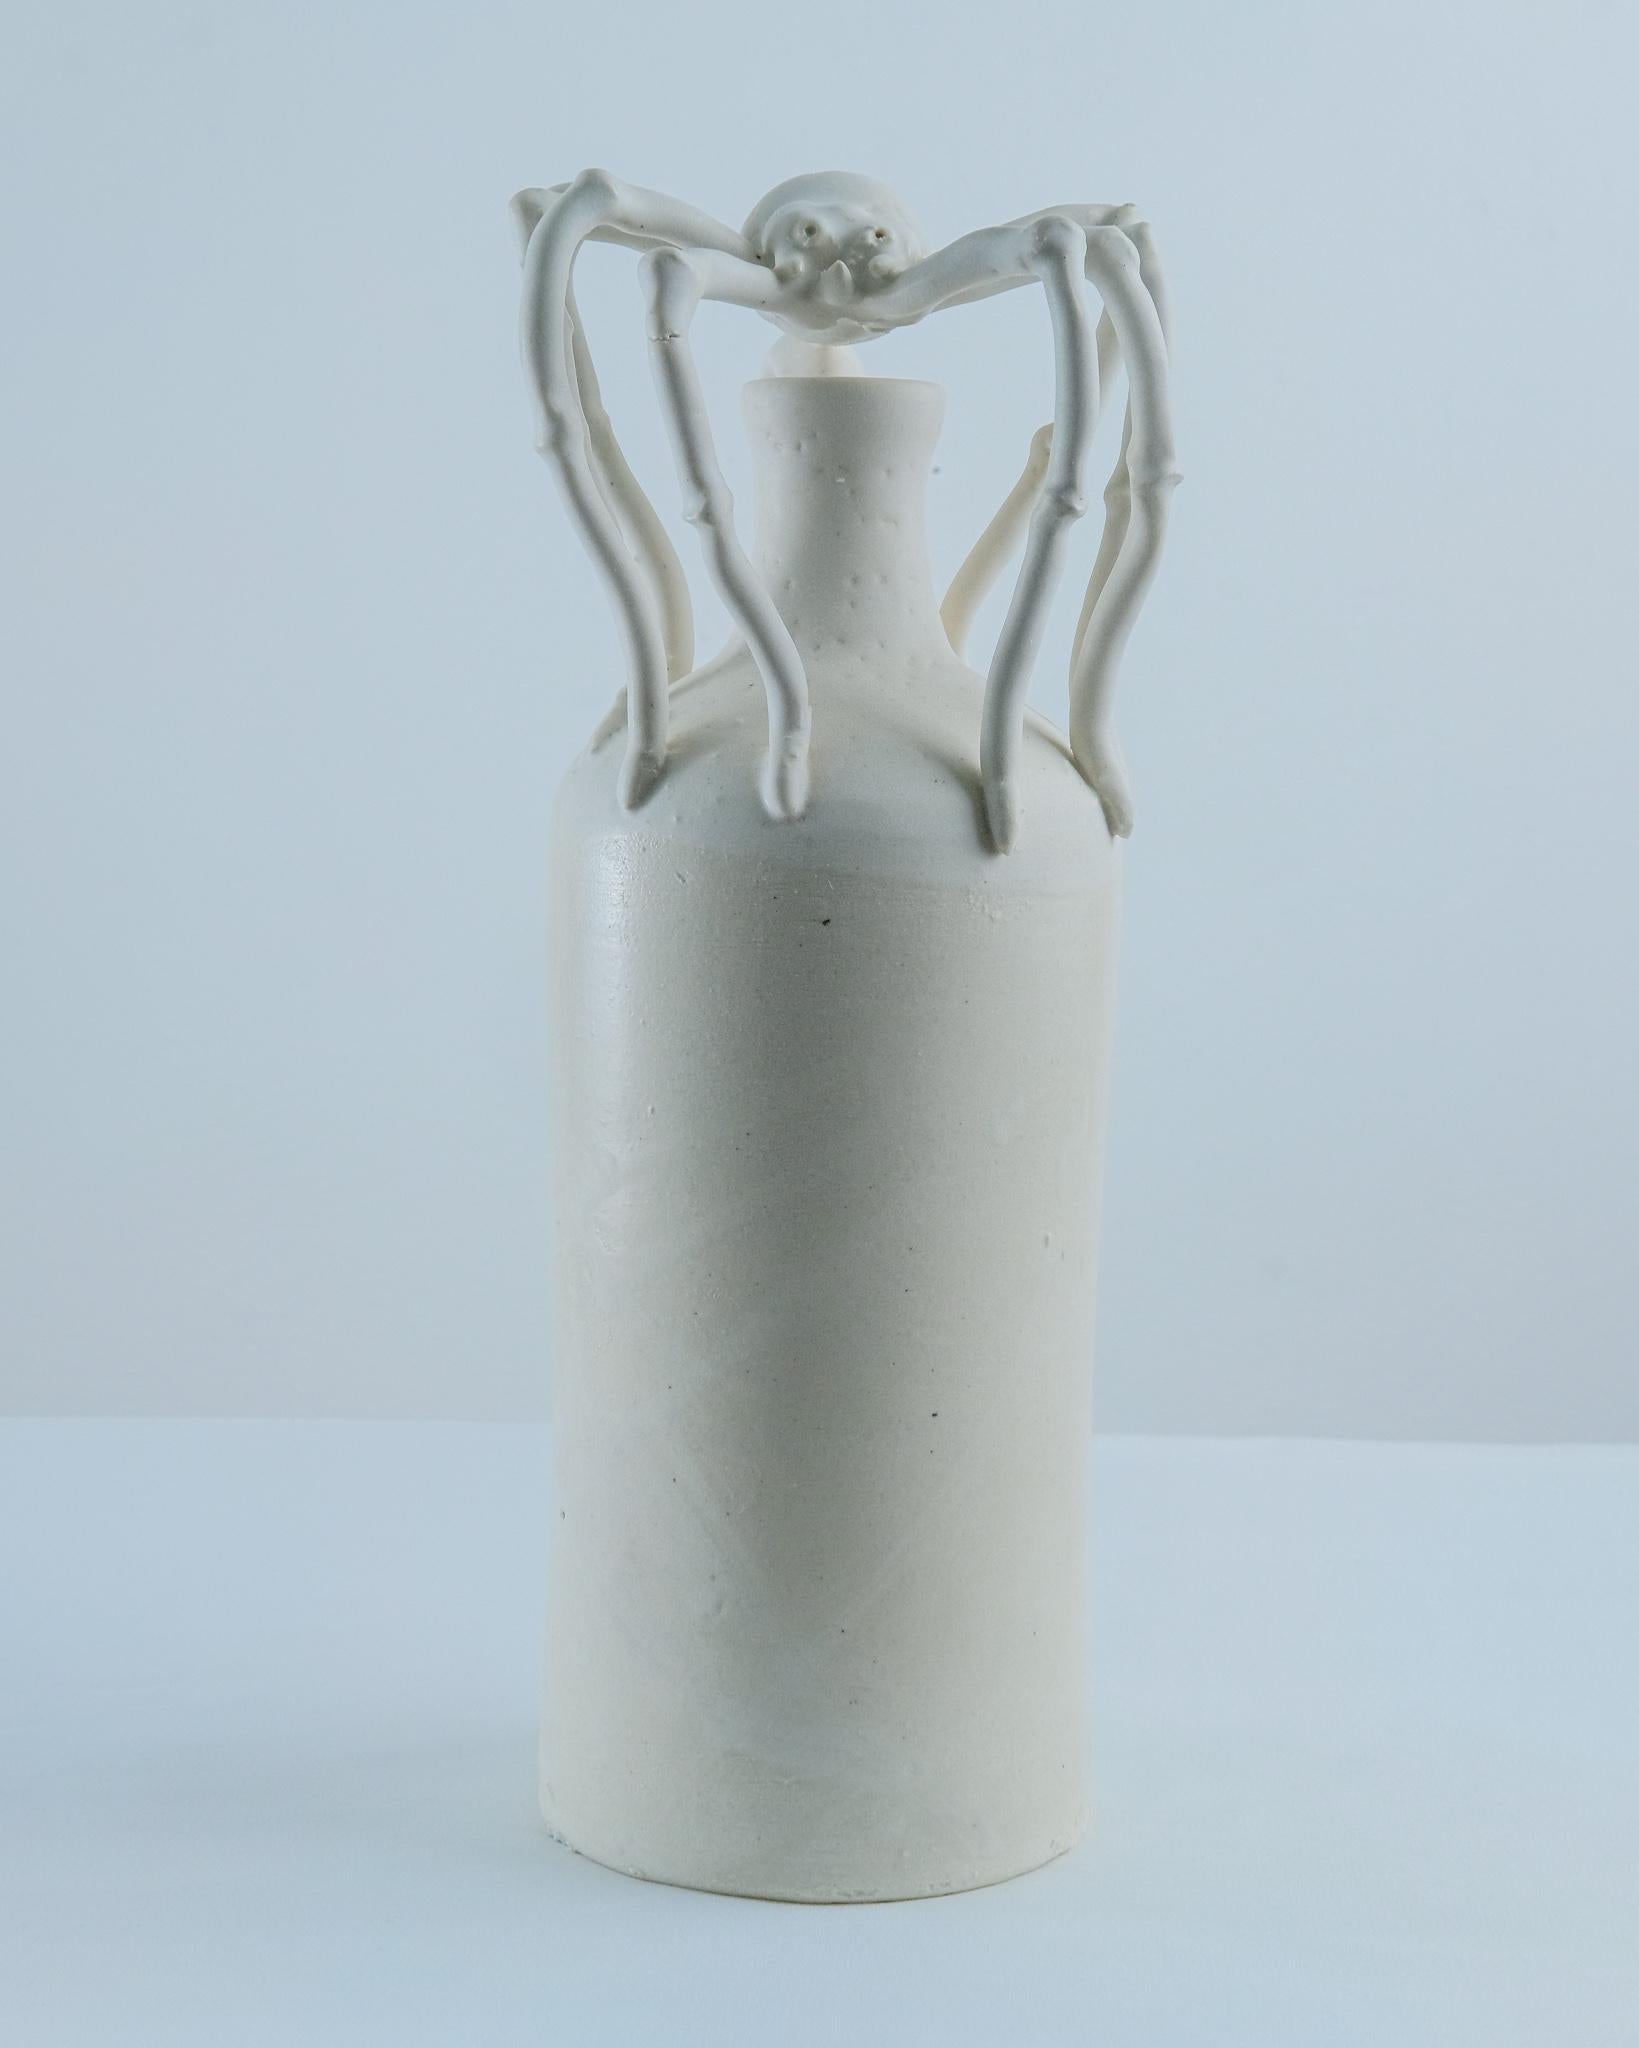 Spider vase